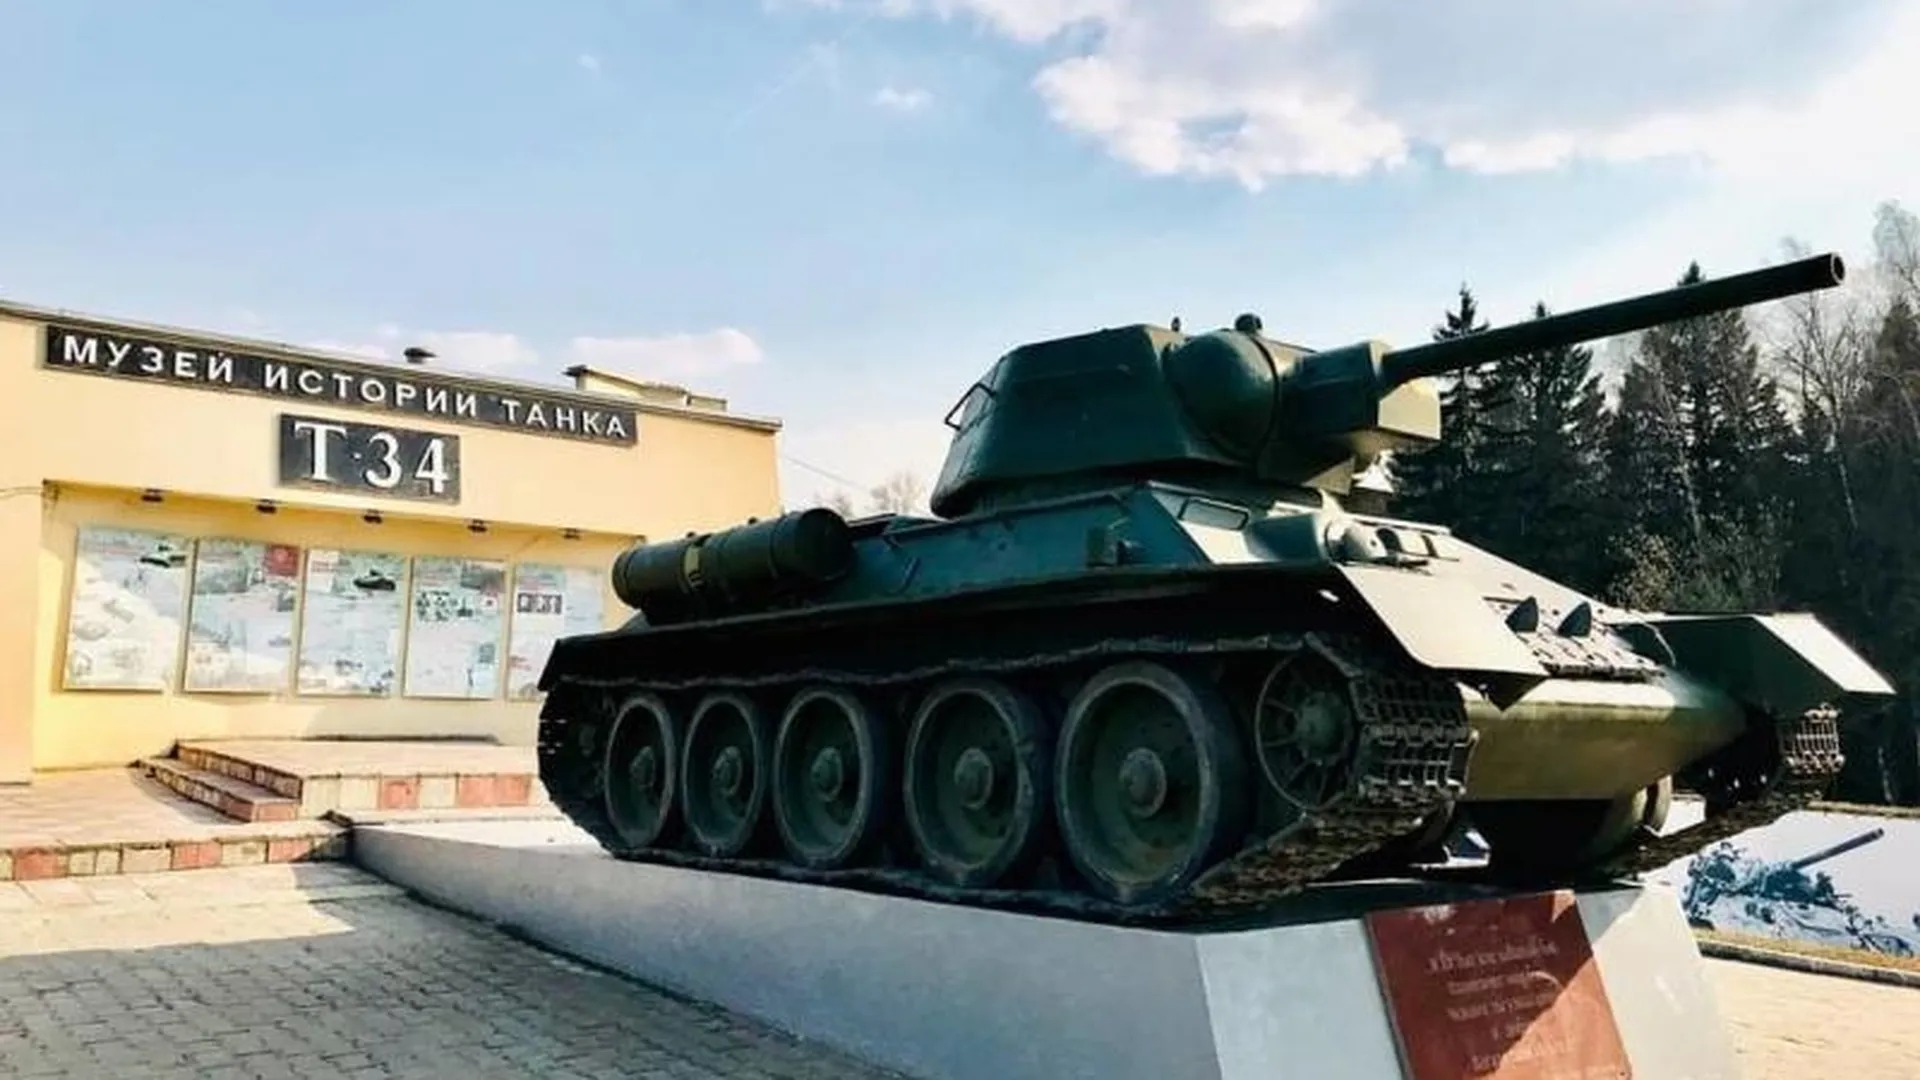 Вход в музей «История танка Т-34» будет бесплатным каждую третью среду месяца